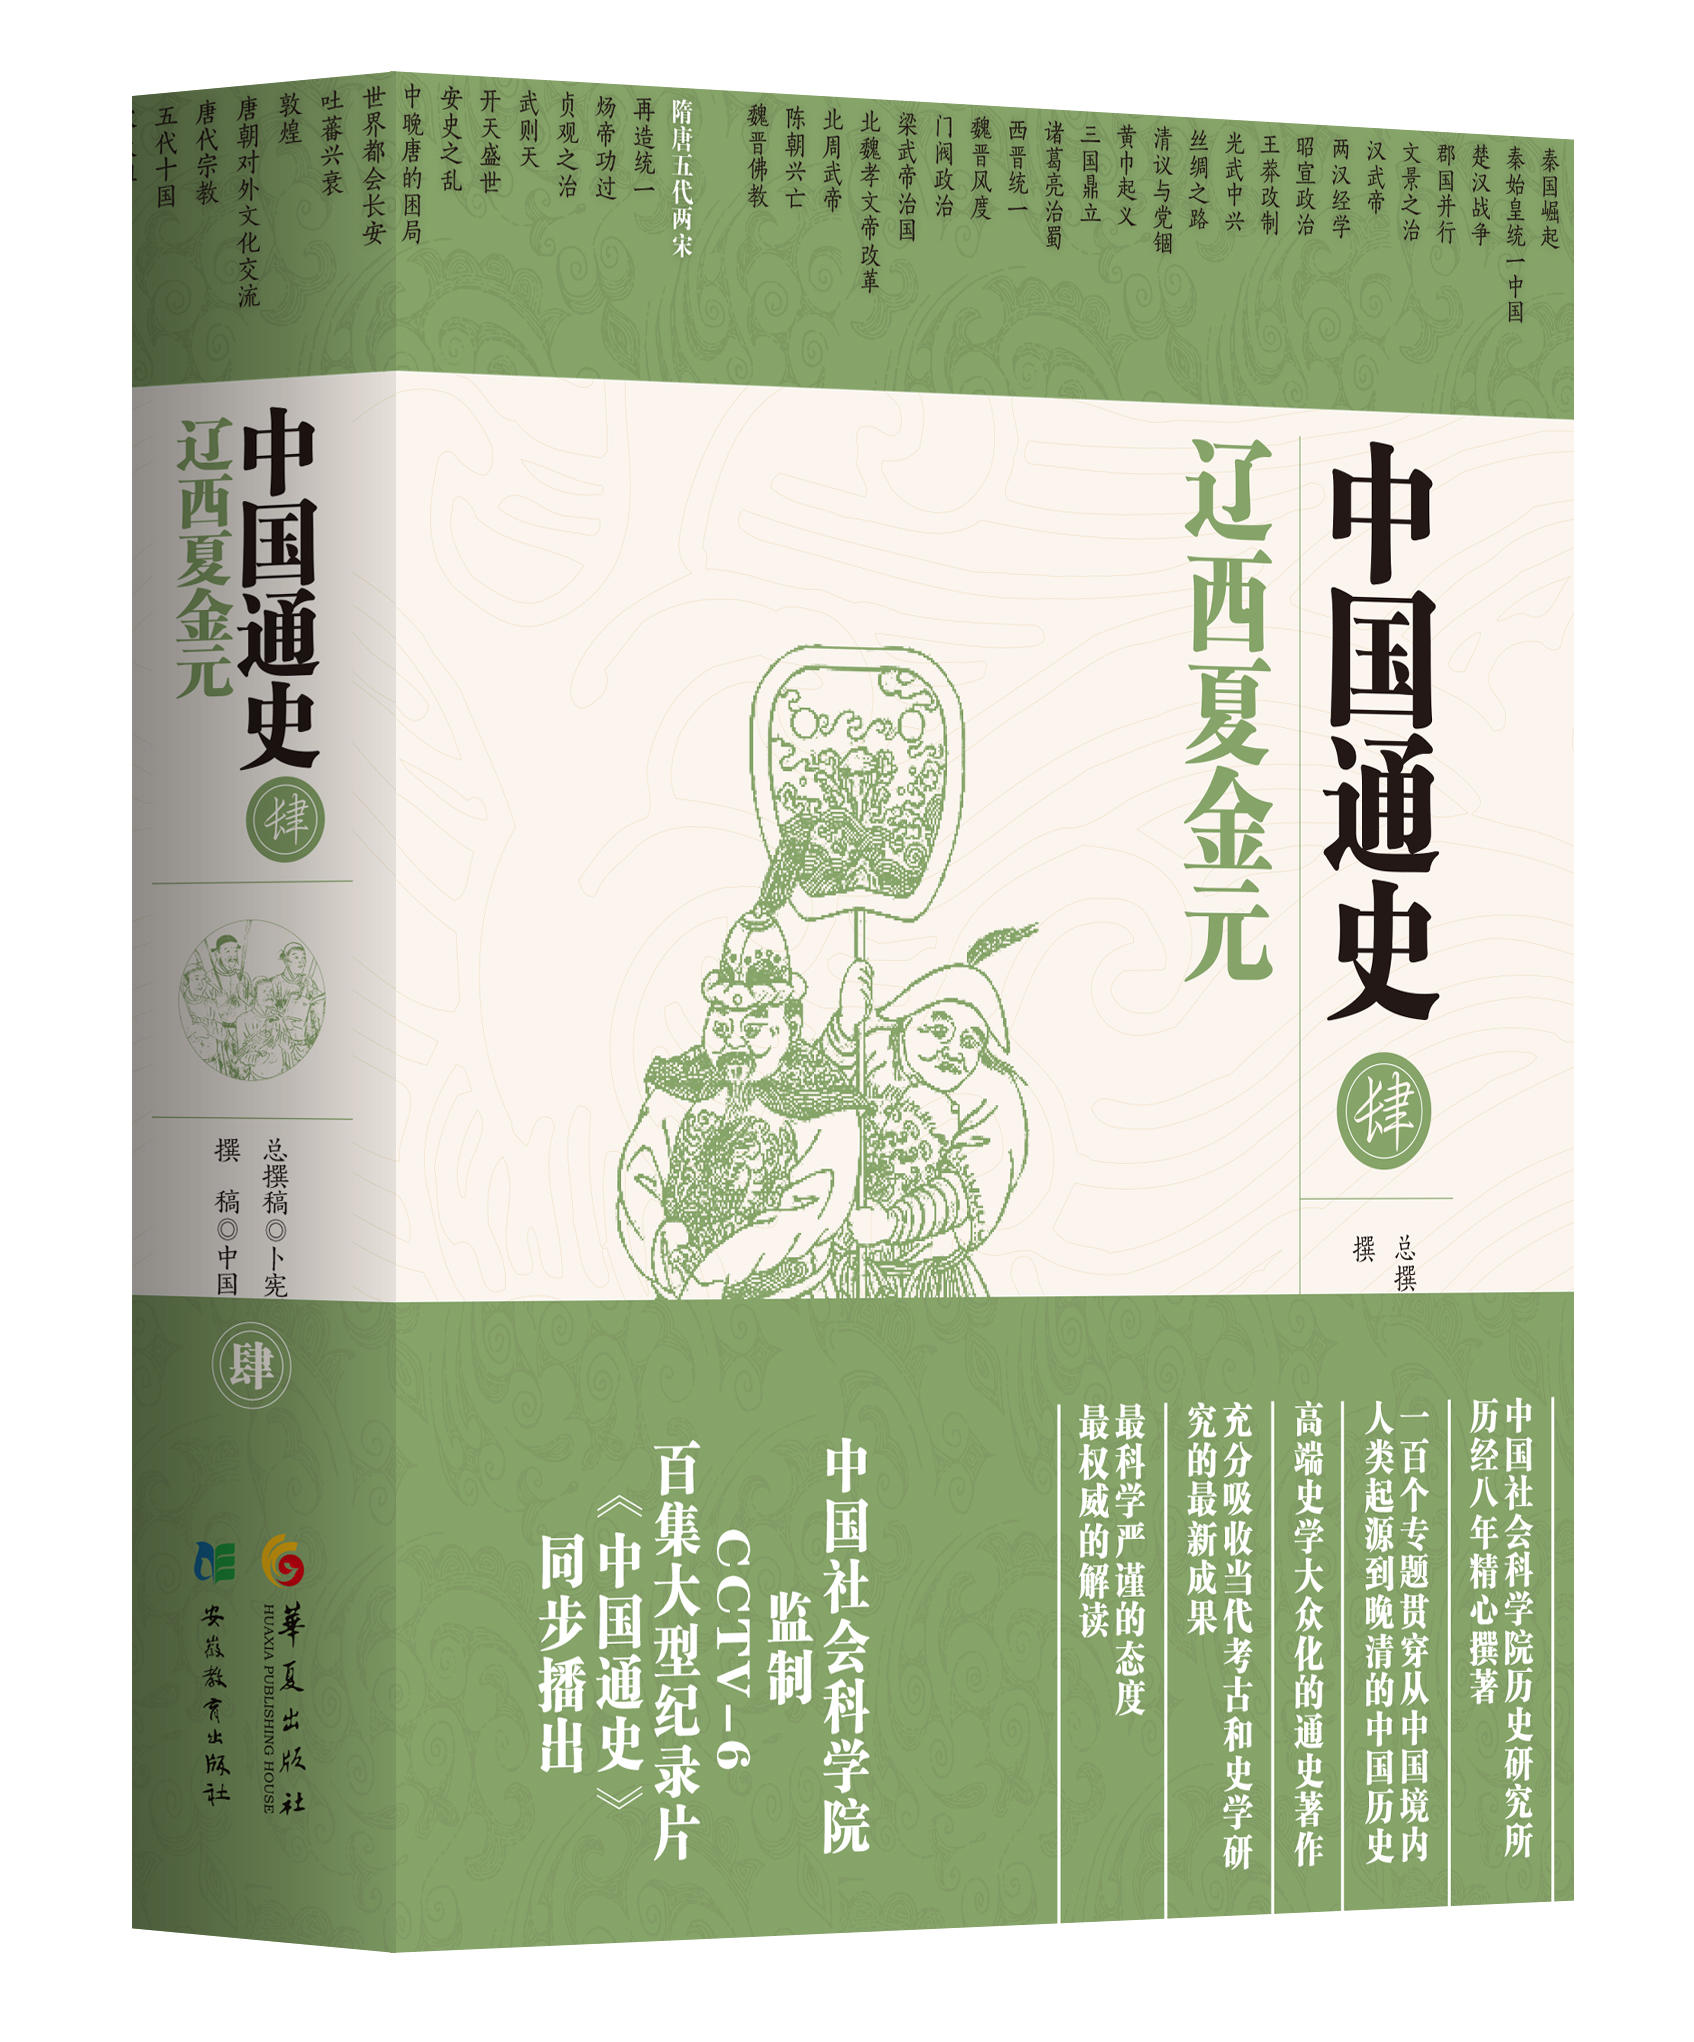 中國社科院五卷本《中國通史》